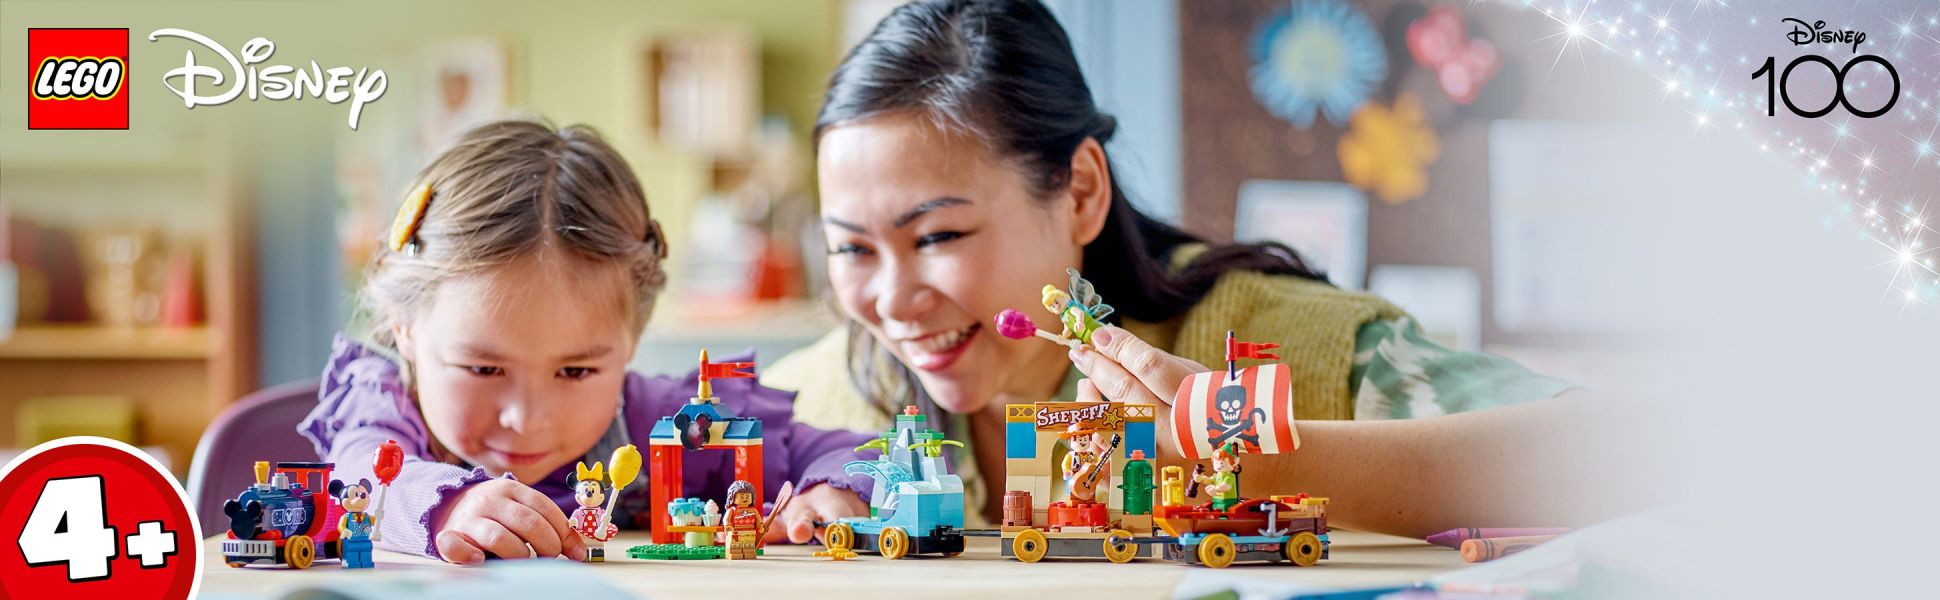 LEGO Disney 100 Celebration Train Building Toy 43212 Juego imaginativo,  divertido regalo de cumpleaños para niños en edad preescolar a partir de 4